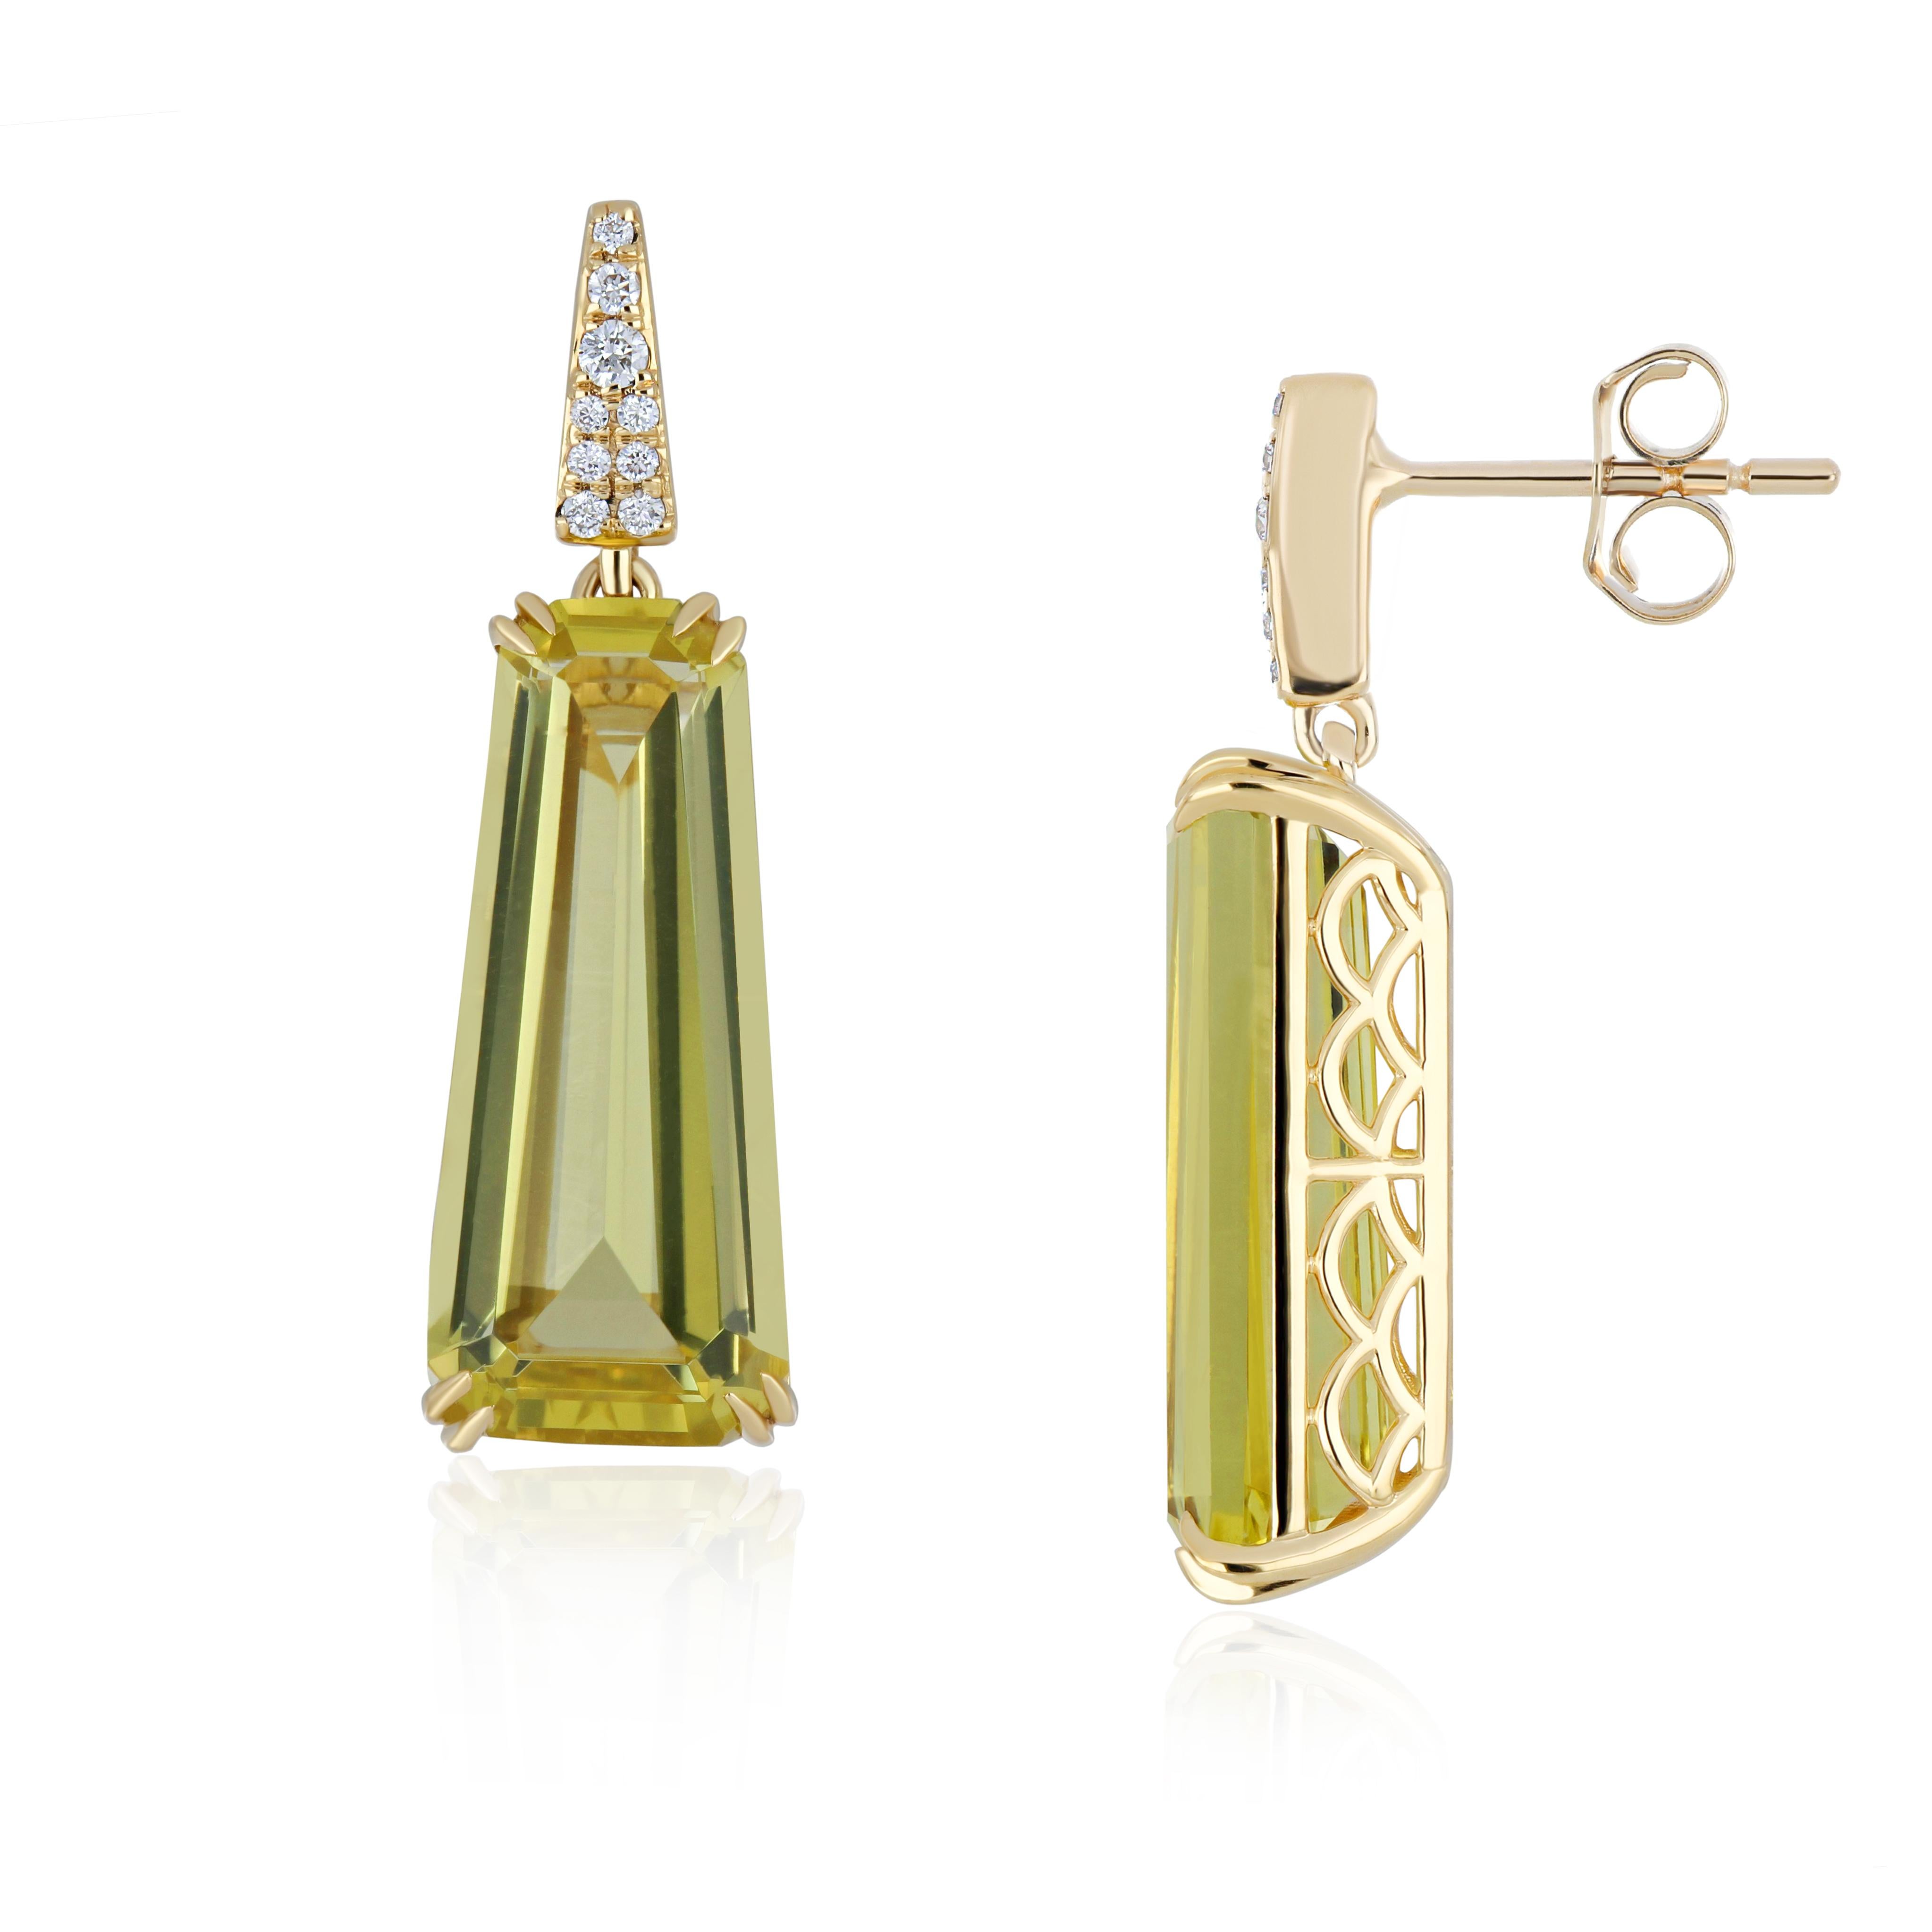 Exquisite Lemon Quartz & Diamond Studded Ring, Pedant & Earrings Set in 18K Gold For Sale 3